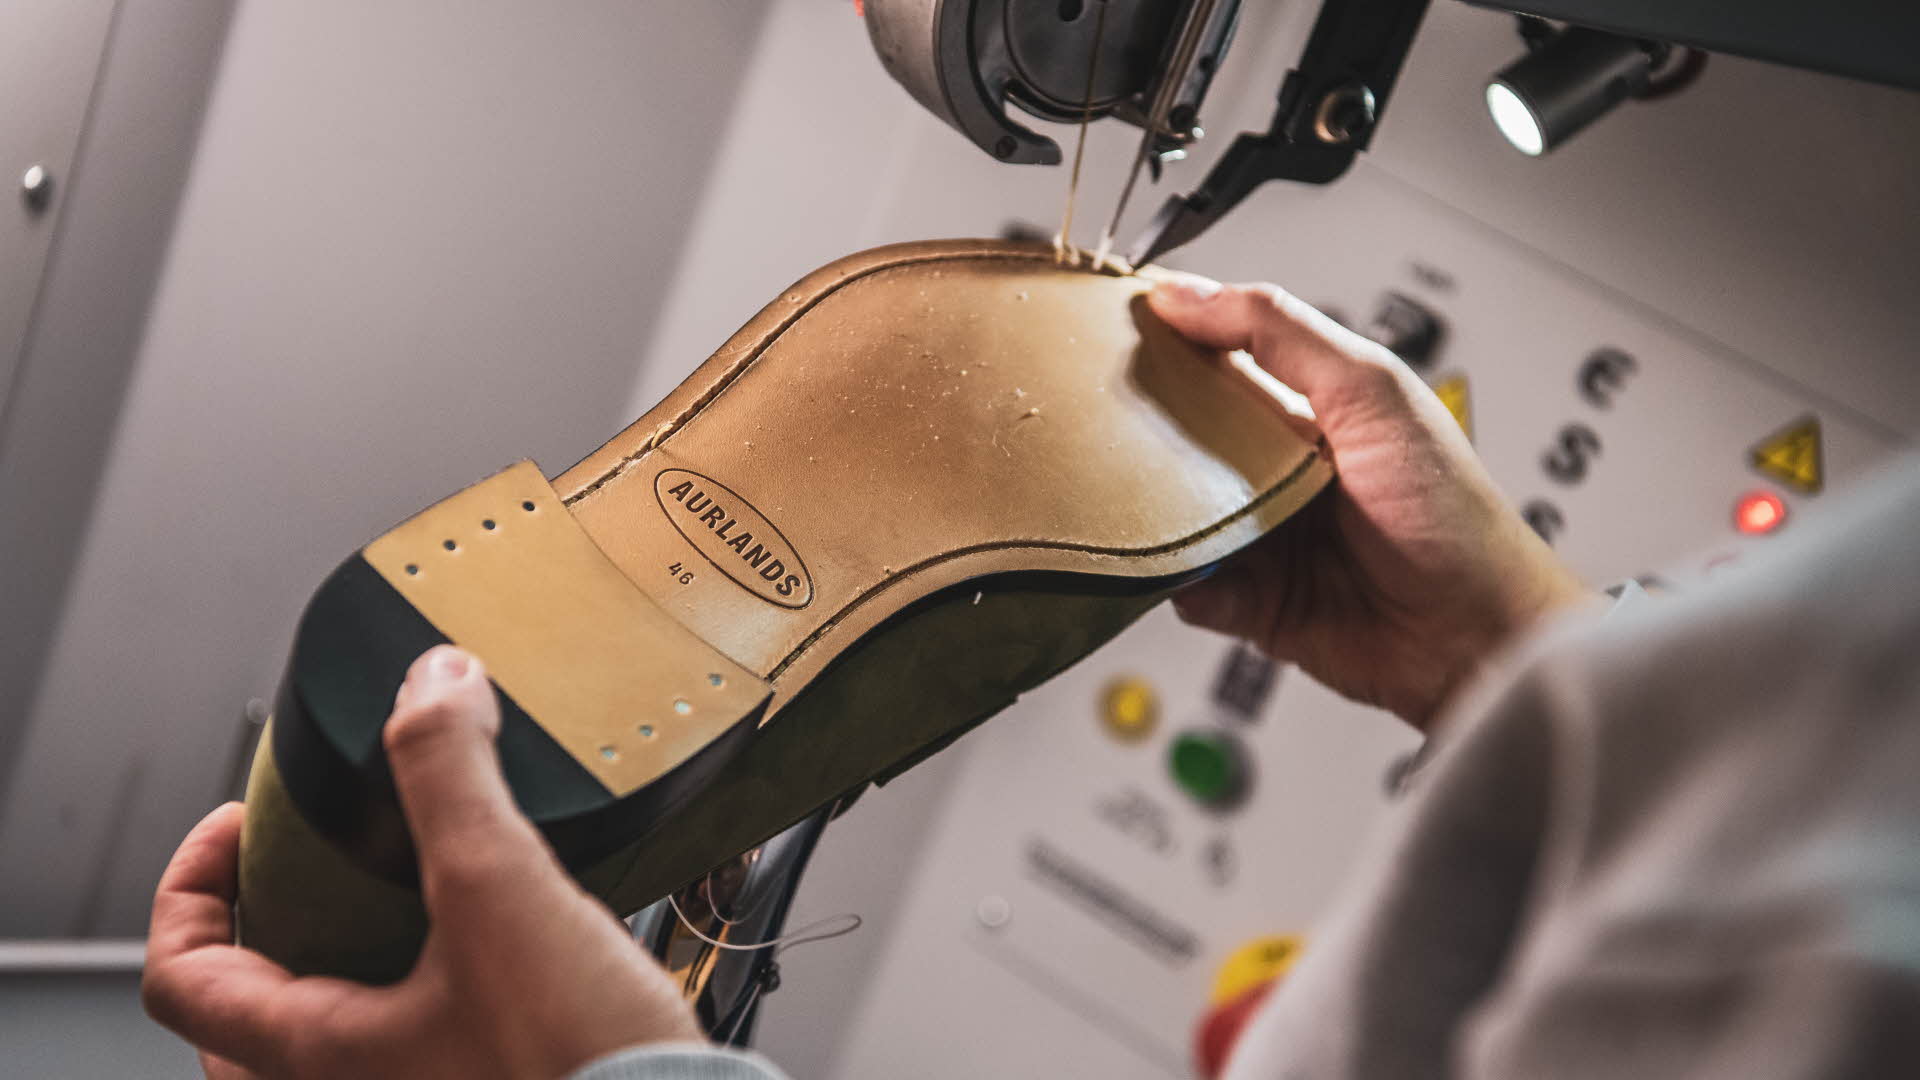 鞋匠正在缝制艾于兰鞋的鞋底。艾于兰鞋的全新商标在缝纫机的聚光灯下闪耀。